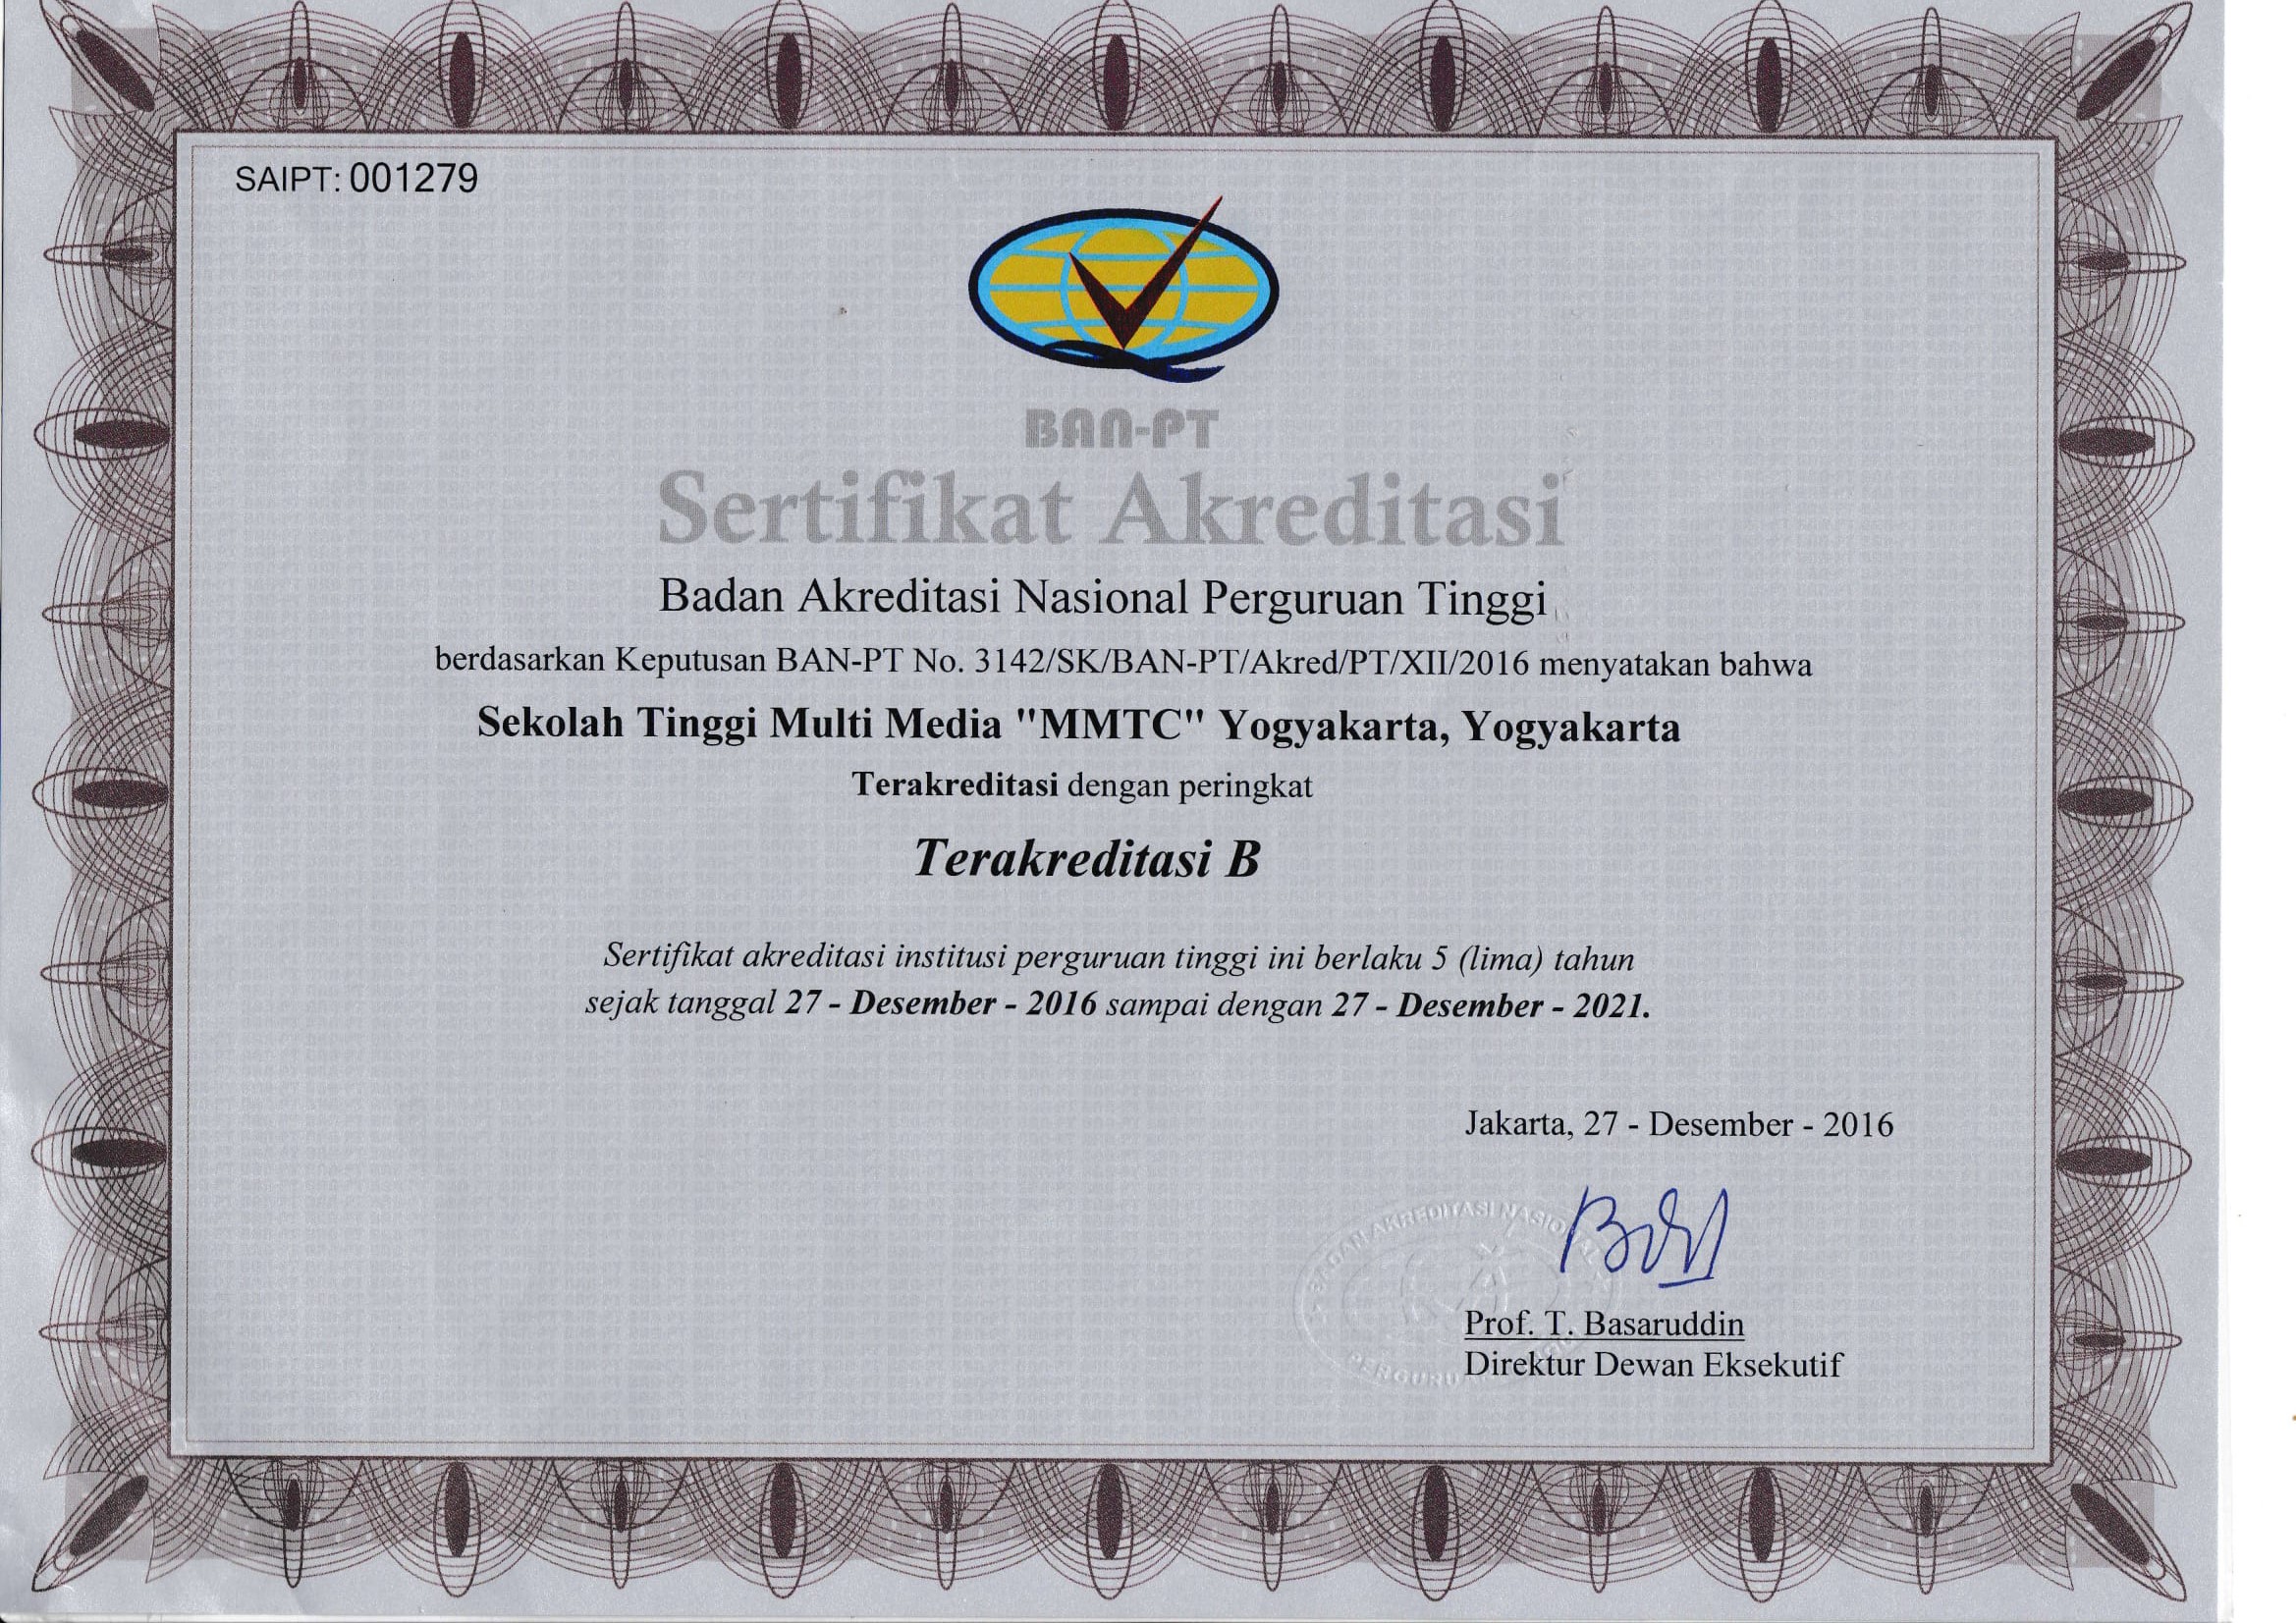 Sertifikat Akreditasi Institusi (Certificate of Institutional Accreditation)